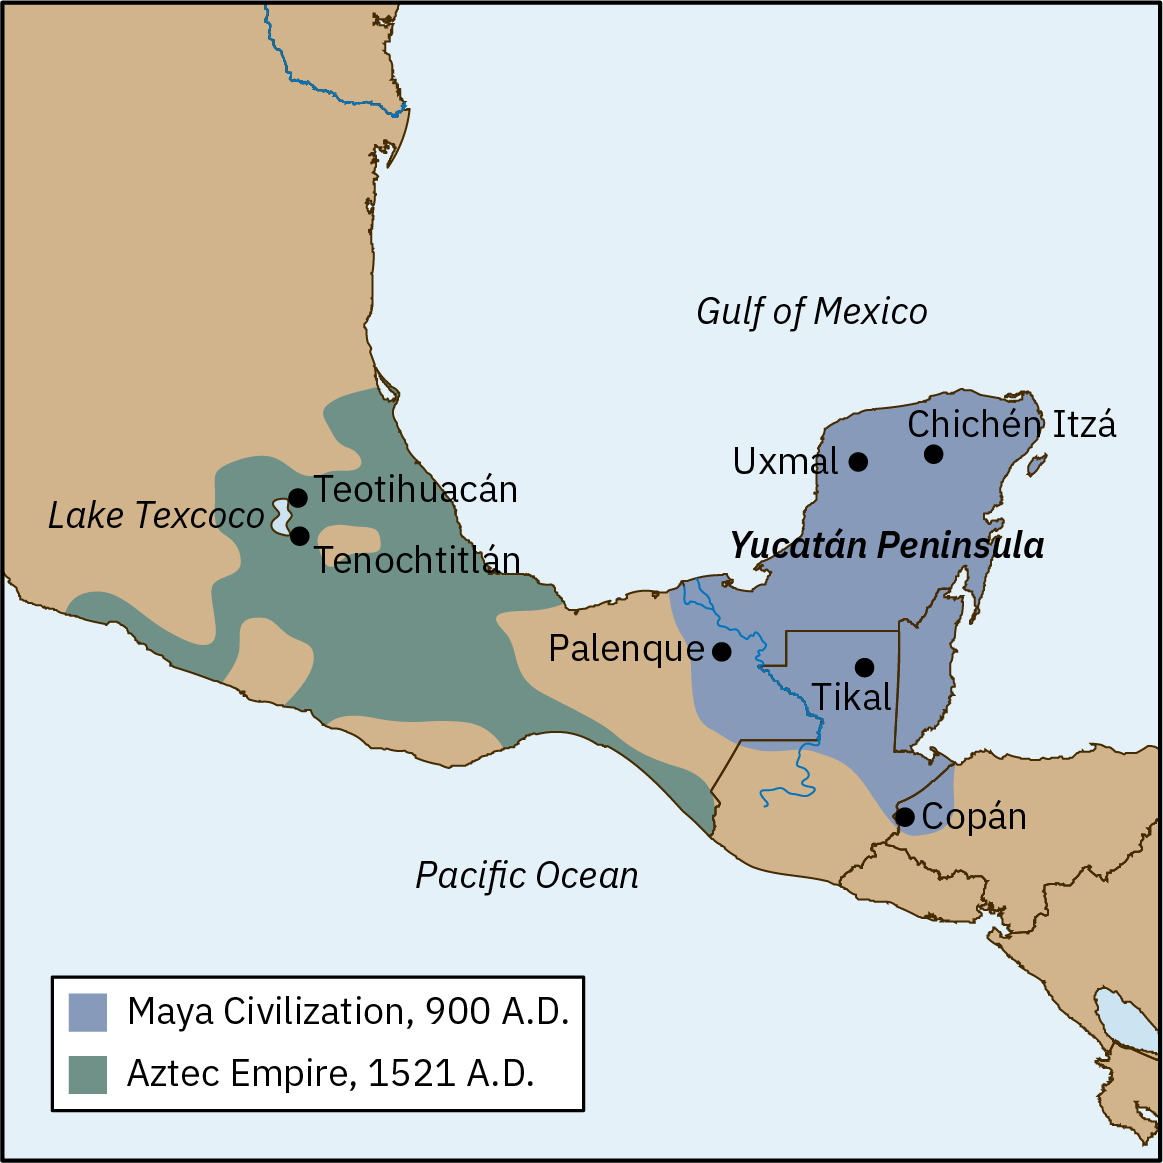 خريطة تُصور نطاقات حضارة المايا، حوالي 900 م، وإمبراطورية الأزتك، حوالي 1521 م. تحتل حضارة المايا كامل شبه جزيرة يوكاتان في أمريكا الوسطى، وتشمل مدن كوبان وتيكال وبالينكي وأكسمال وتشيتشن إيتزا. تحتل إمبراطورية الأزتك جزءًا من أمريكا الوسطى شمال شبه جزيرة يوكاتان، وتشمل مدينتي تيوتيهواكان وتينوتشتيتلان، بالإضافة إلى بحيرة تيكسكوكو. يغطي النطاقان مناطق متساوية تقريبًا.